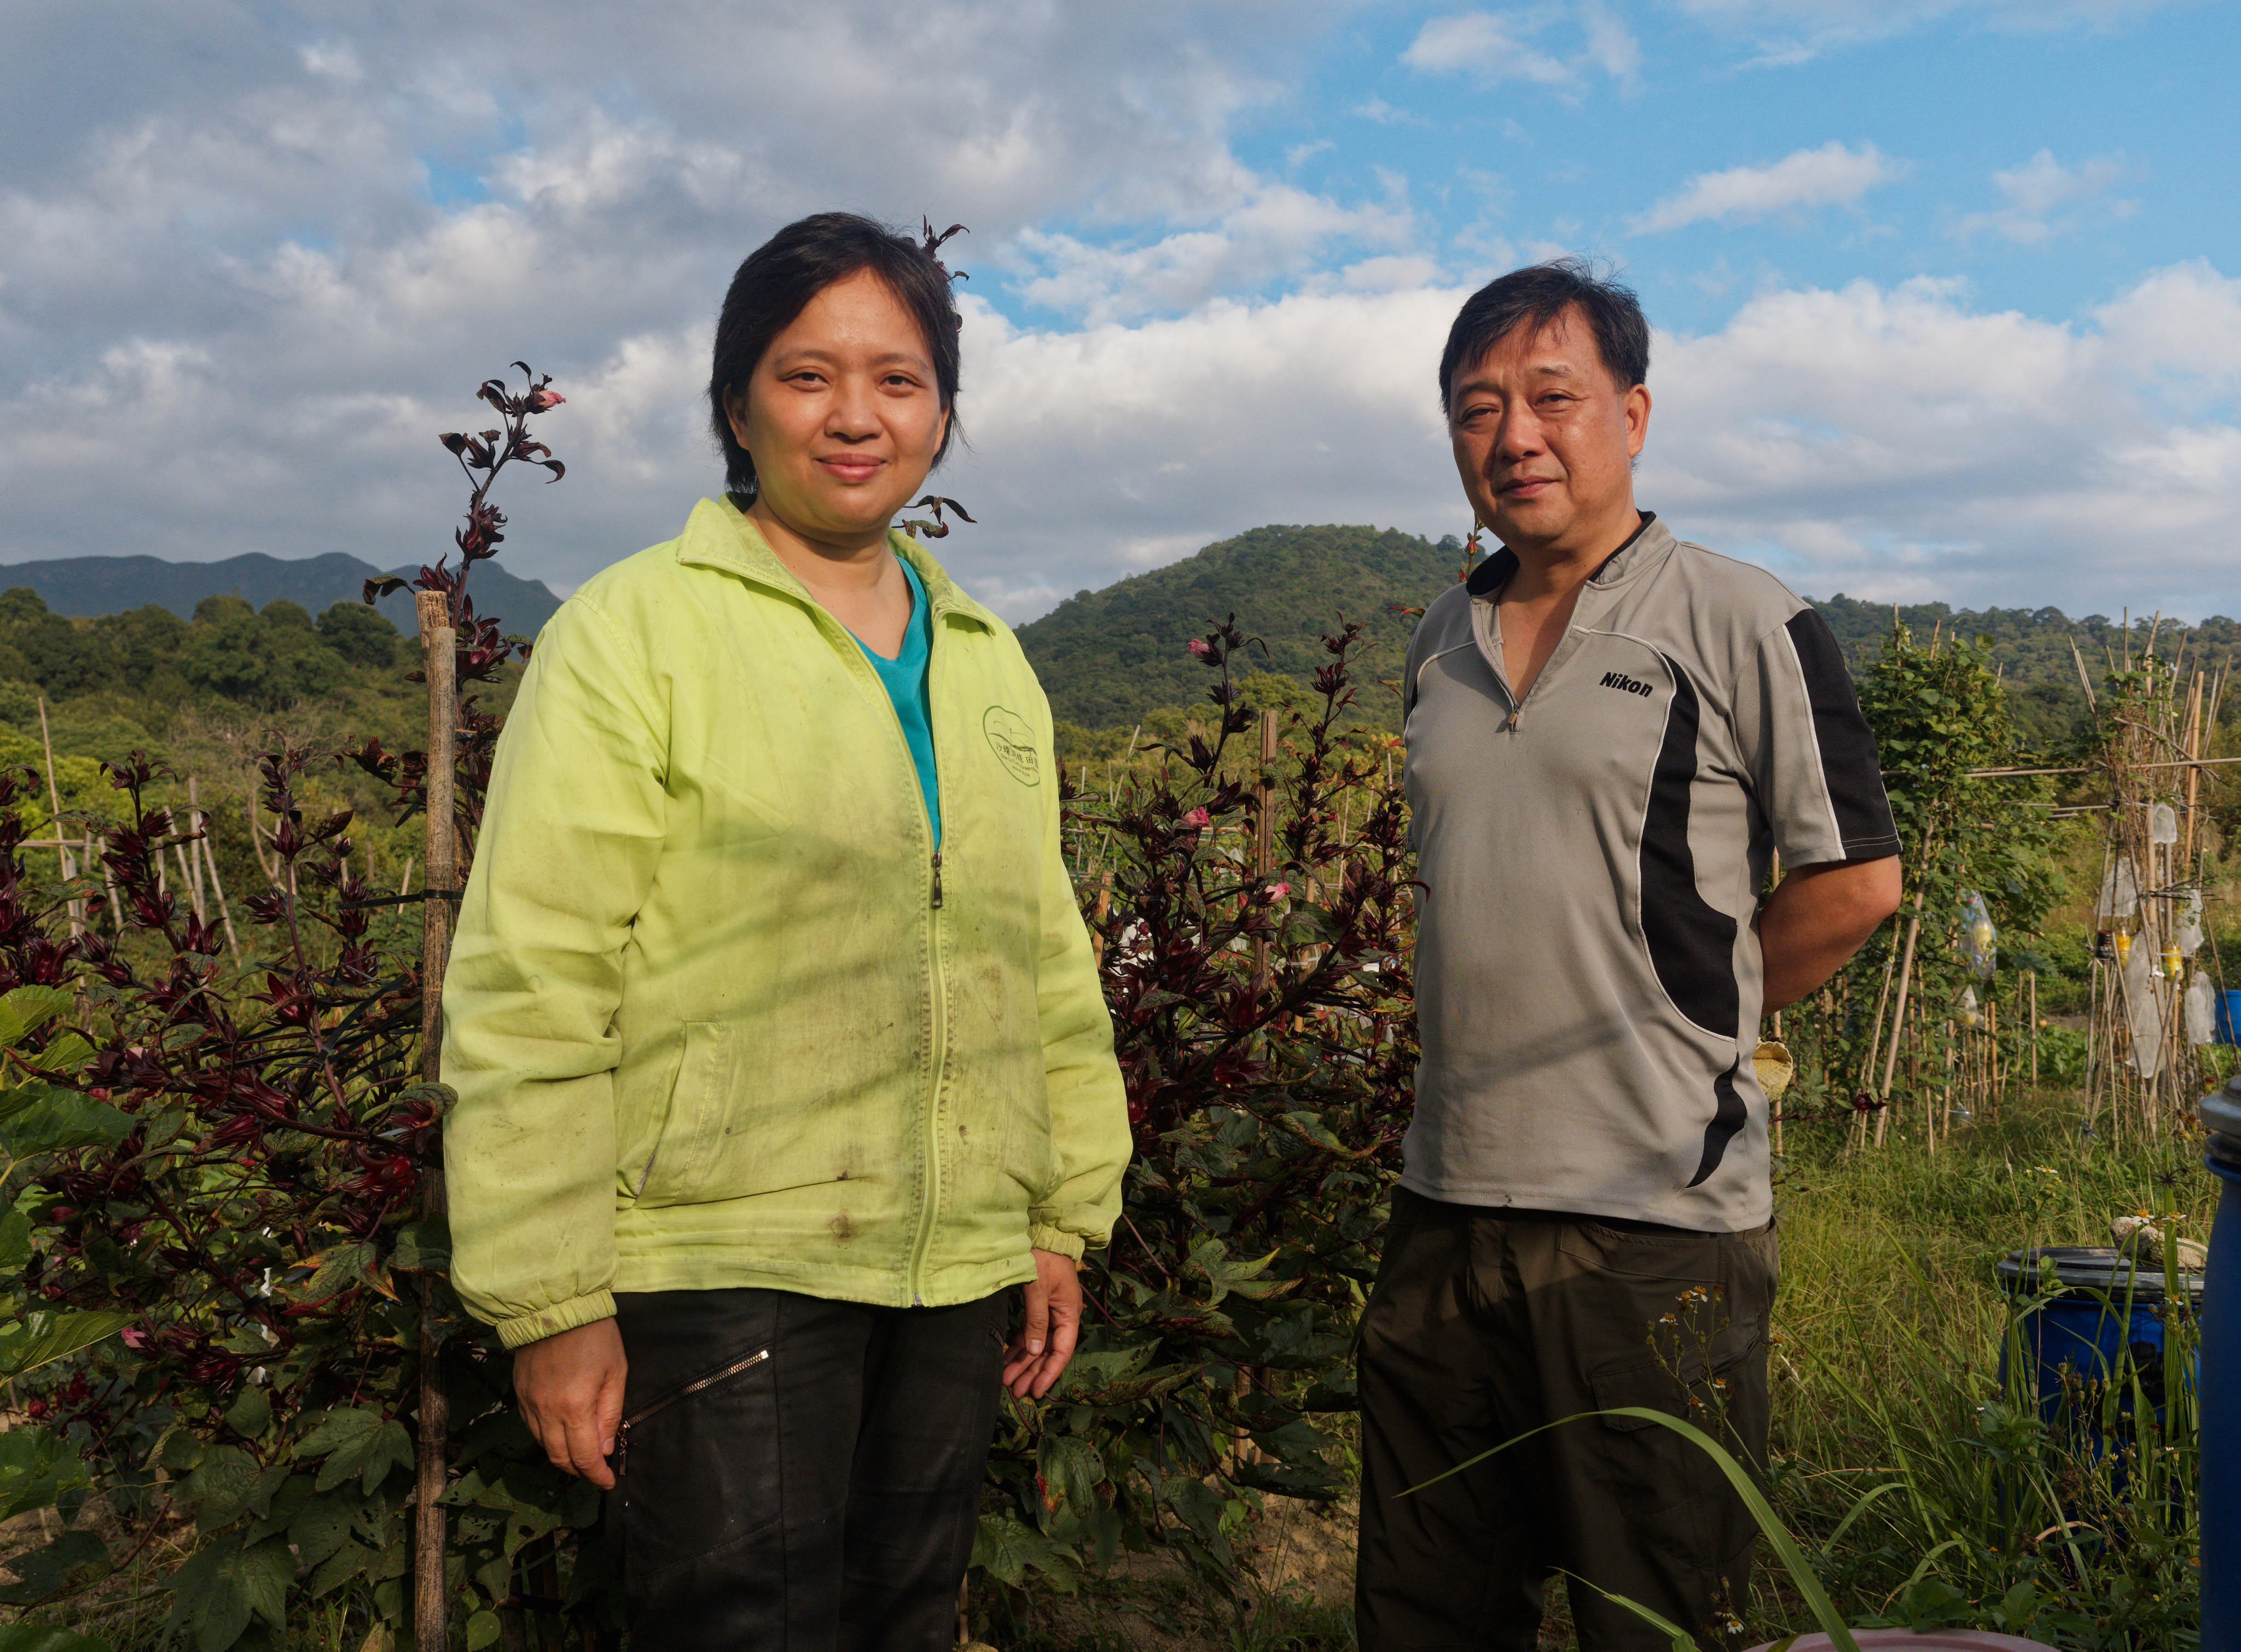 Celia Chan and Kenny Li Hon-man at the organic farm in Shalotung 14 November 2022.&#xA;&#xA;CREDIT:  Martin Williams